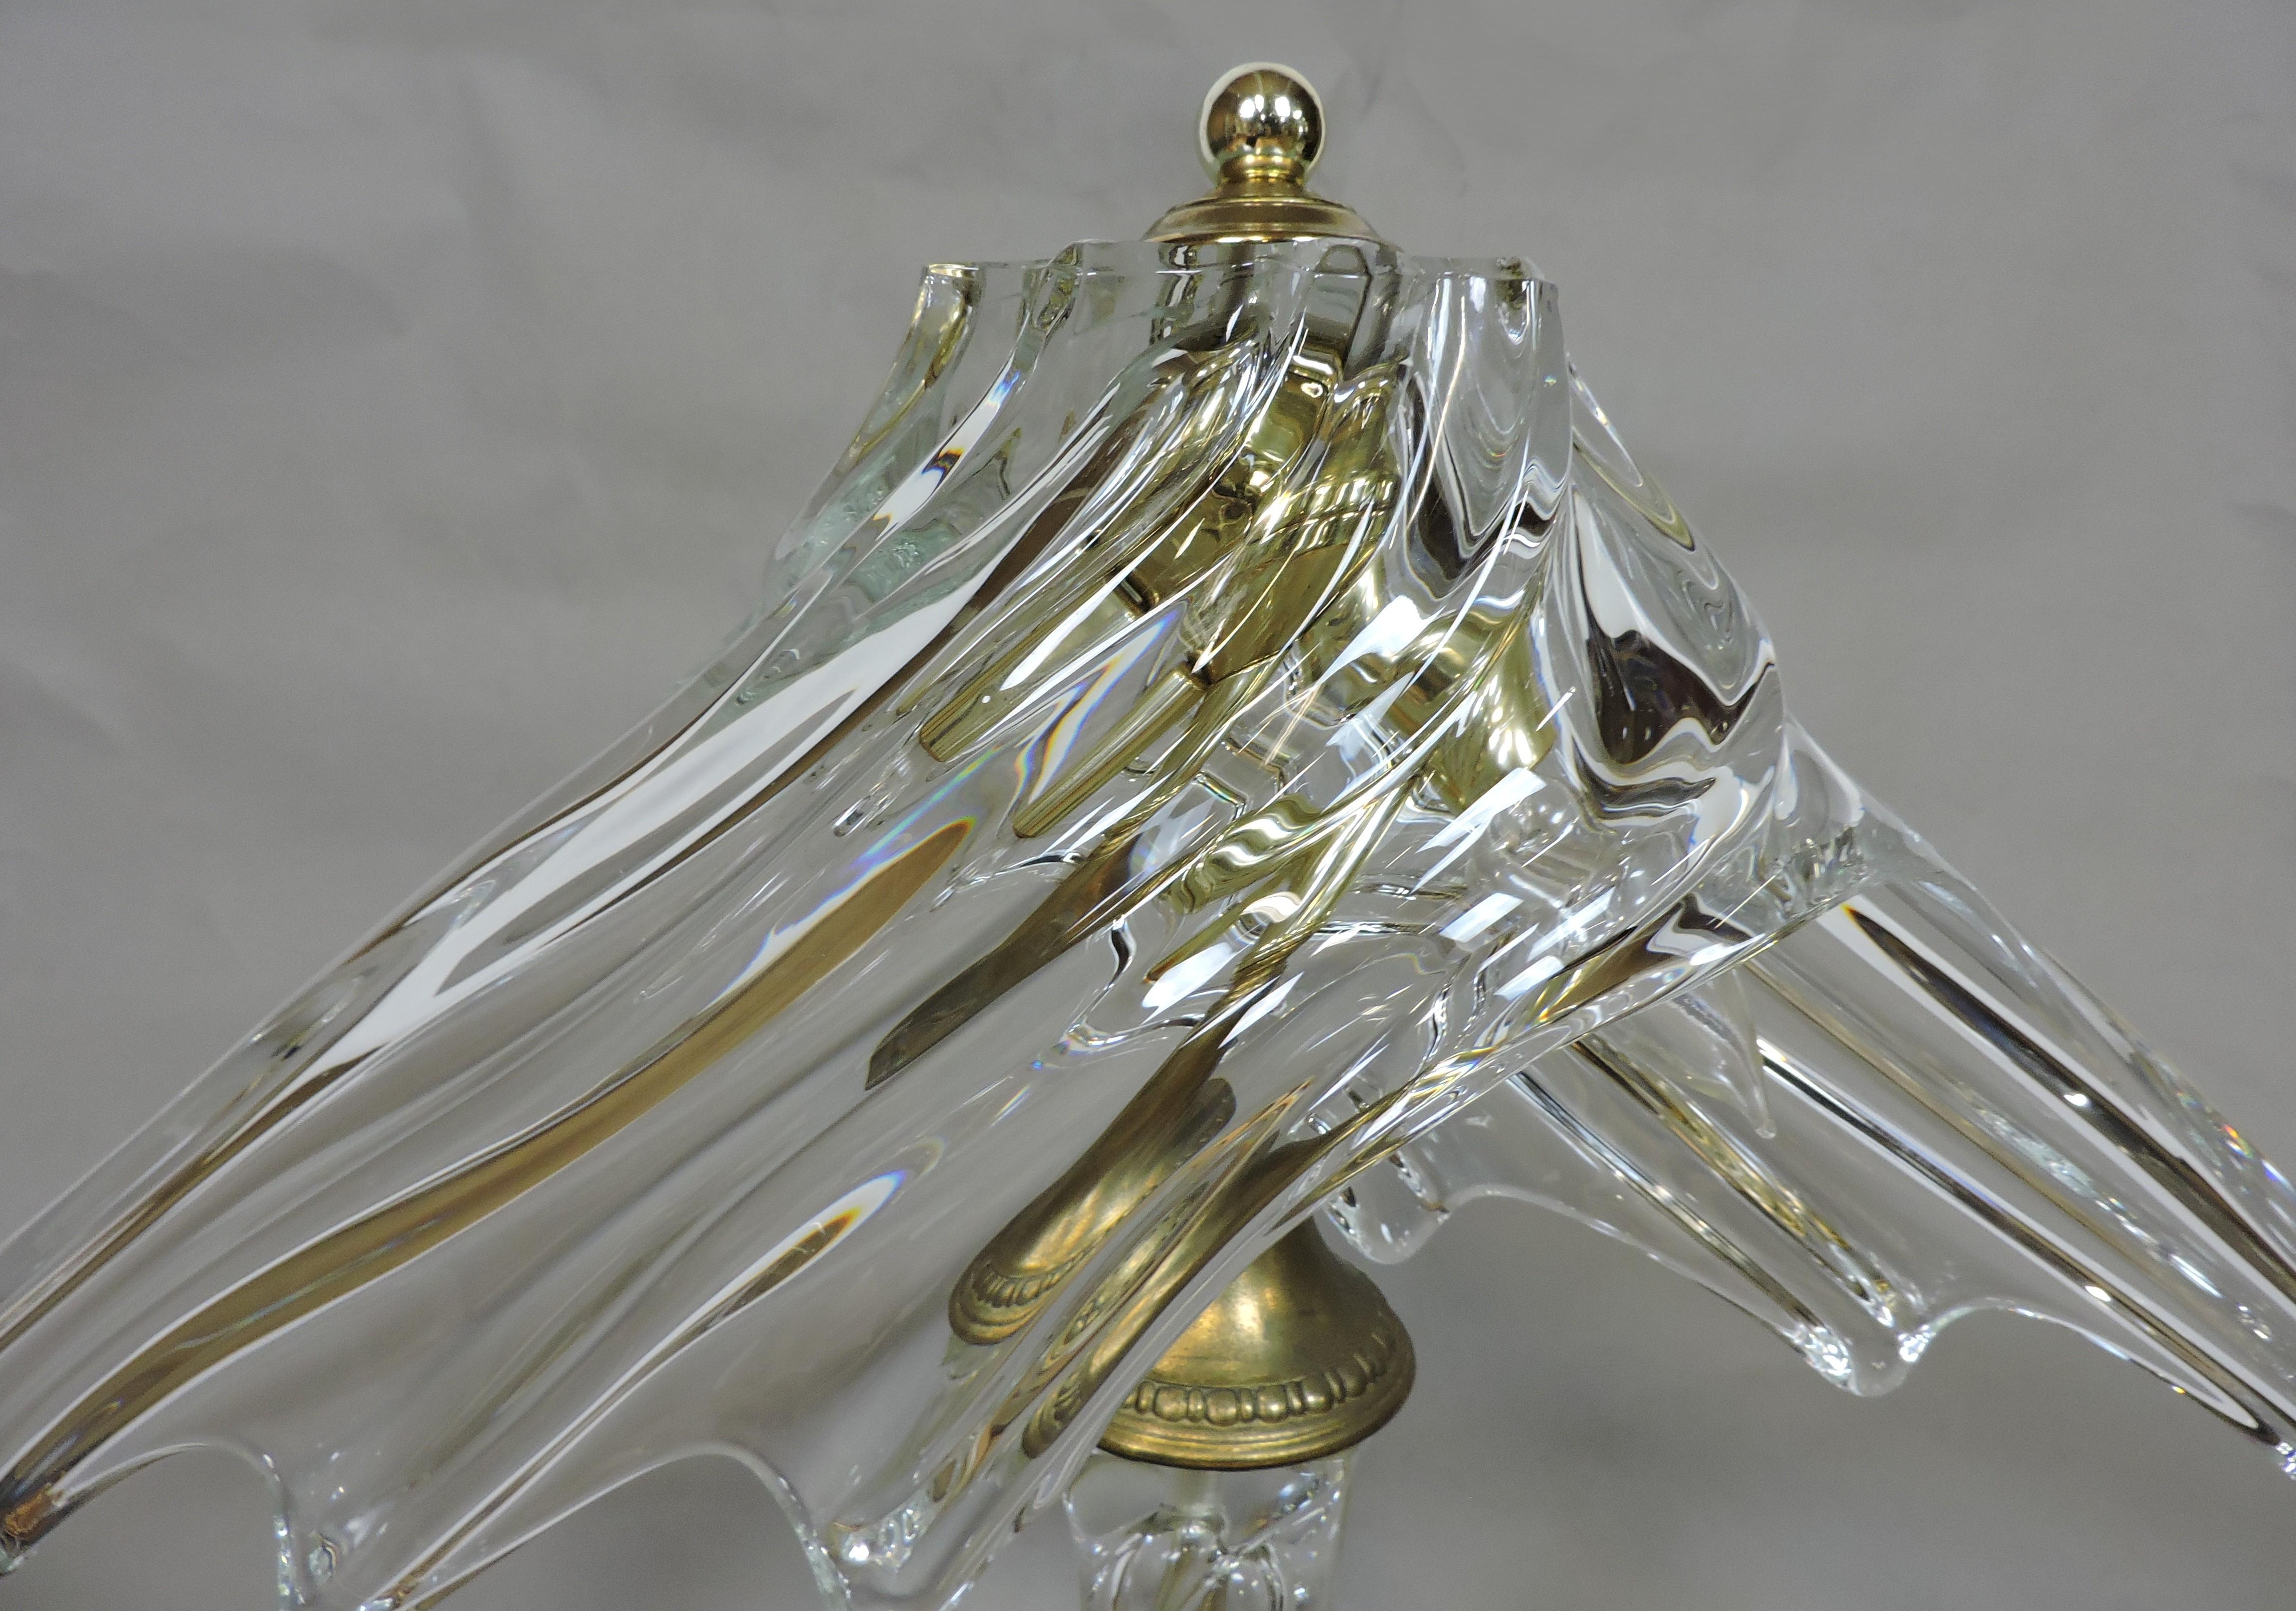 Lampe glamour en cristal soufflé à la bouche par Cofrac Art Verrier France. Cette lampe lourde et de taille impressionnante possède un abat-jour et une base de forme fluide et libre, et est magnifique lorsqu'elle est allumée. Il peut accueillir deux